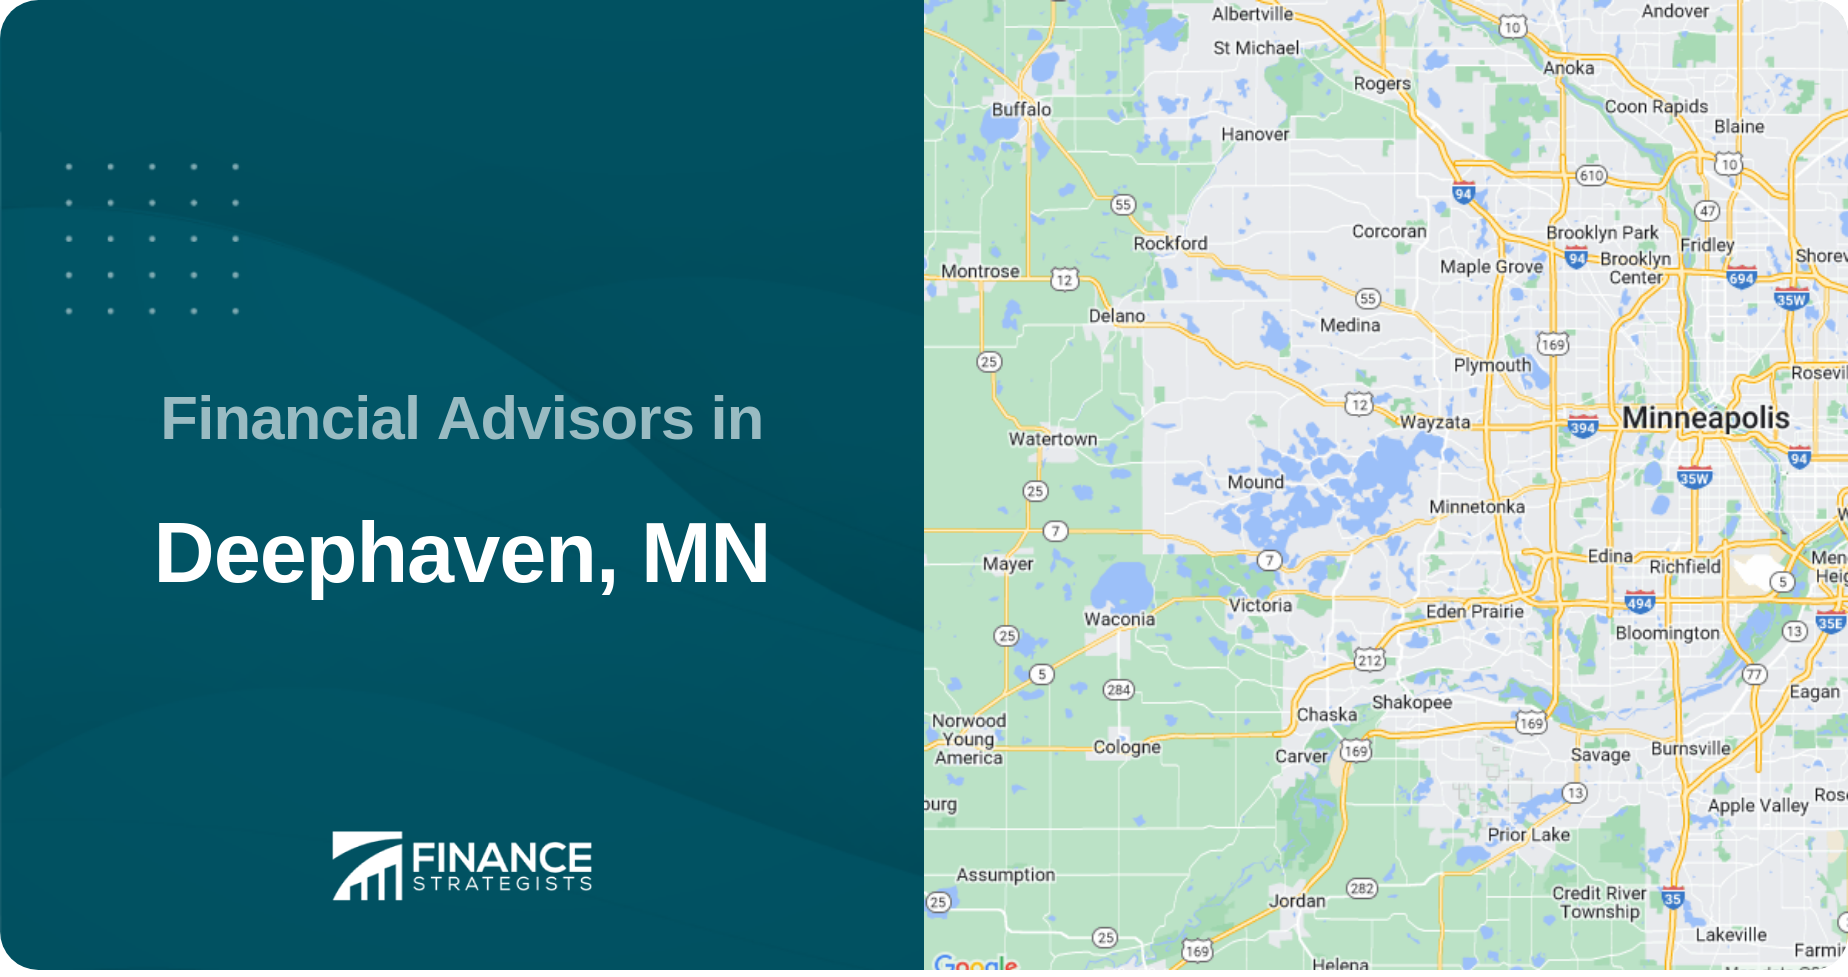 Financial Advisors in Deephaven, MN